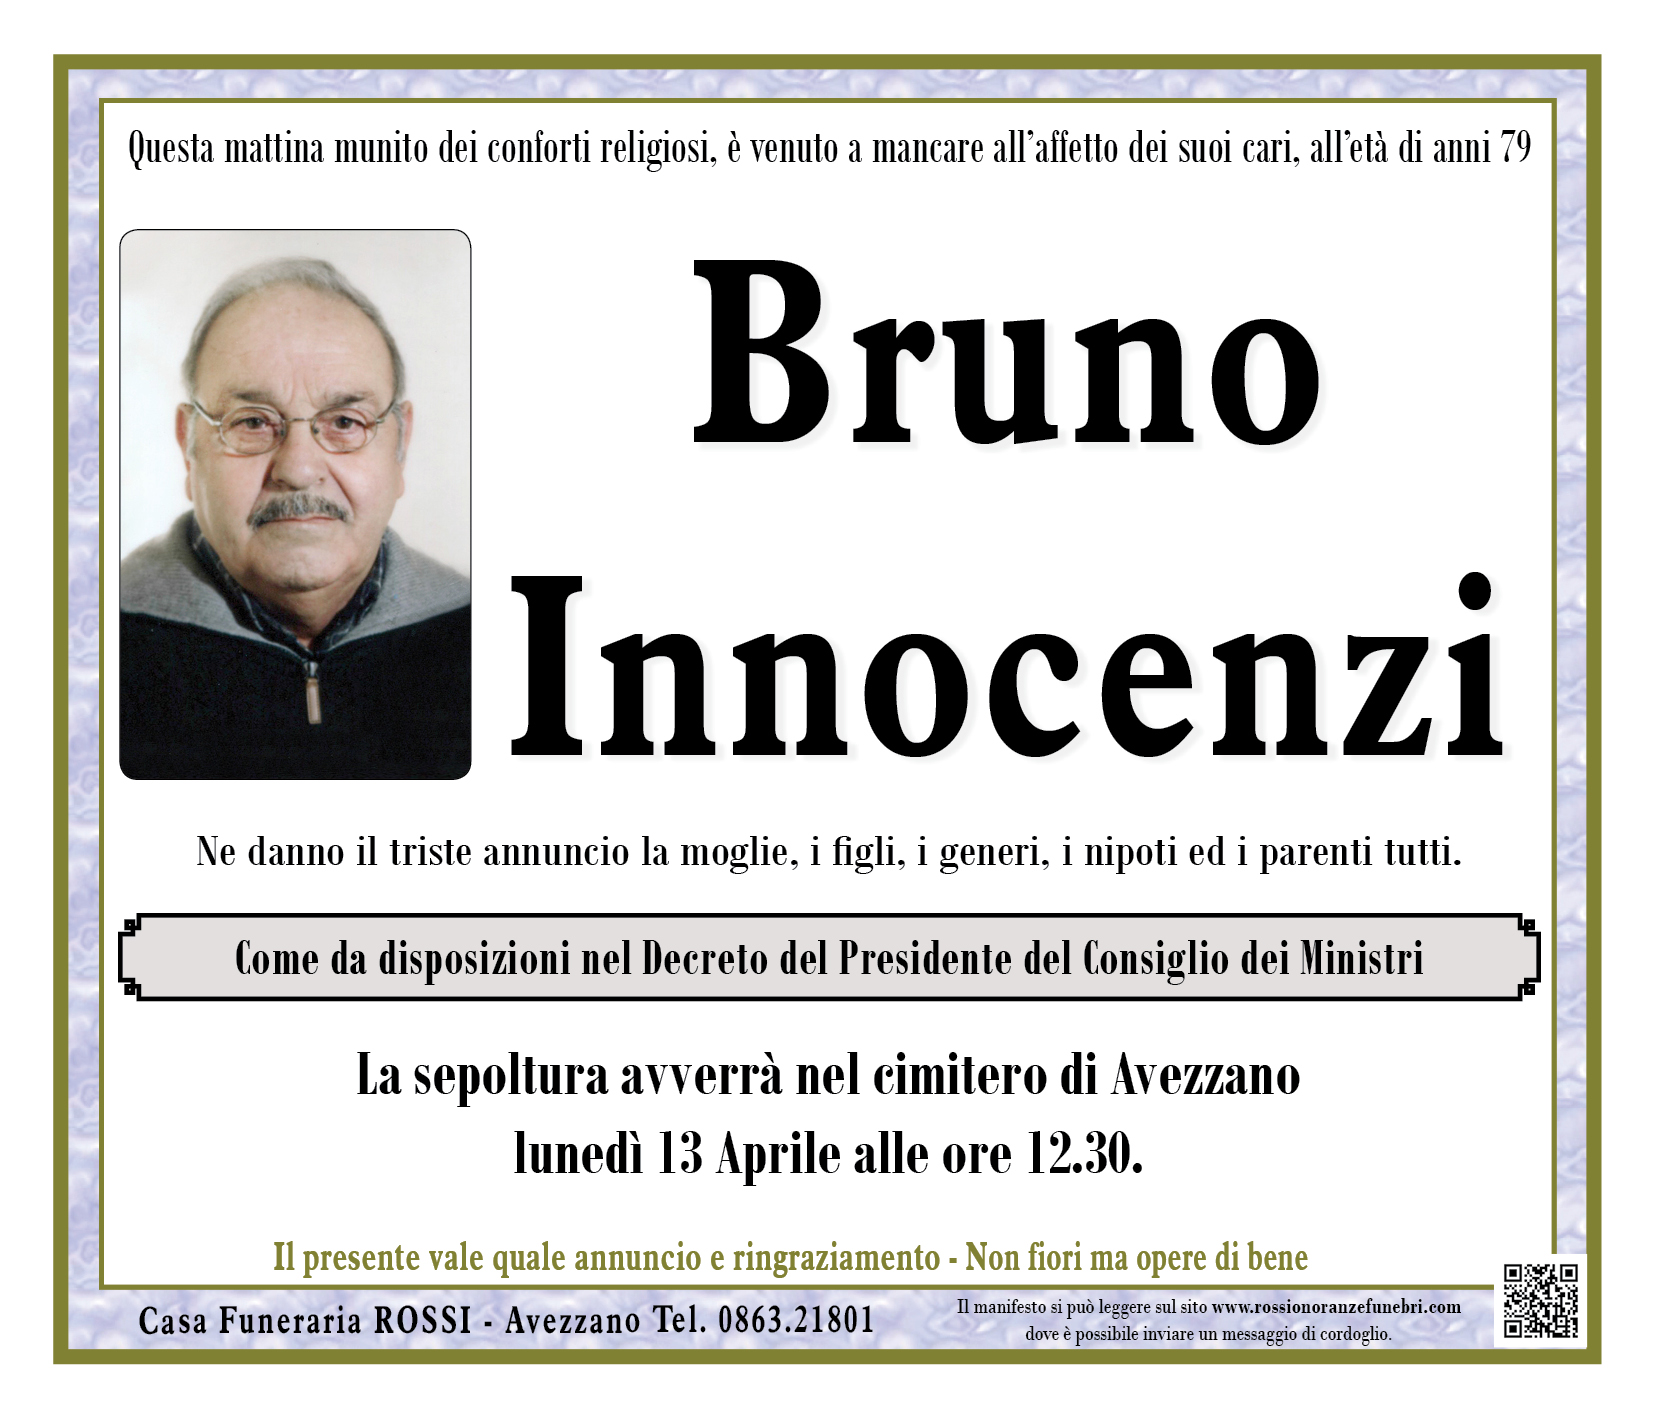 Bruno Innocenzi